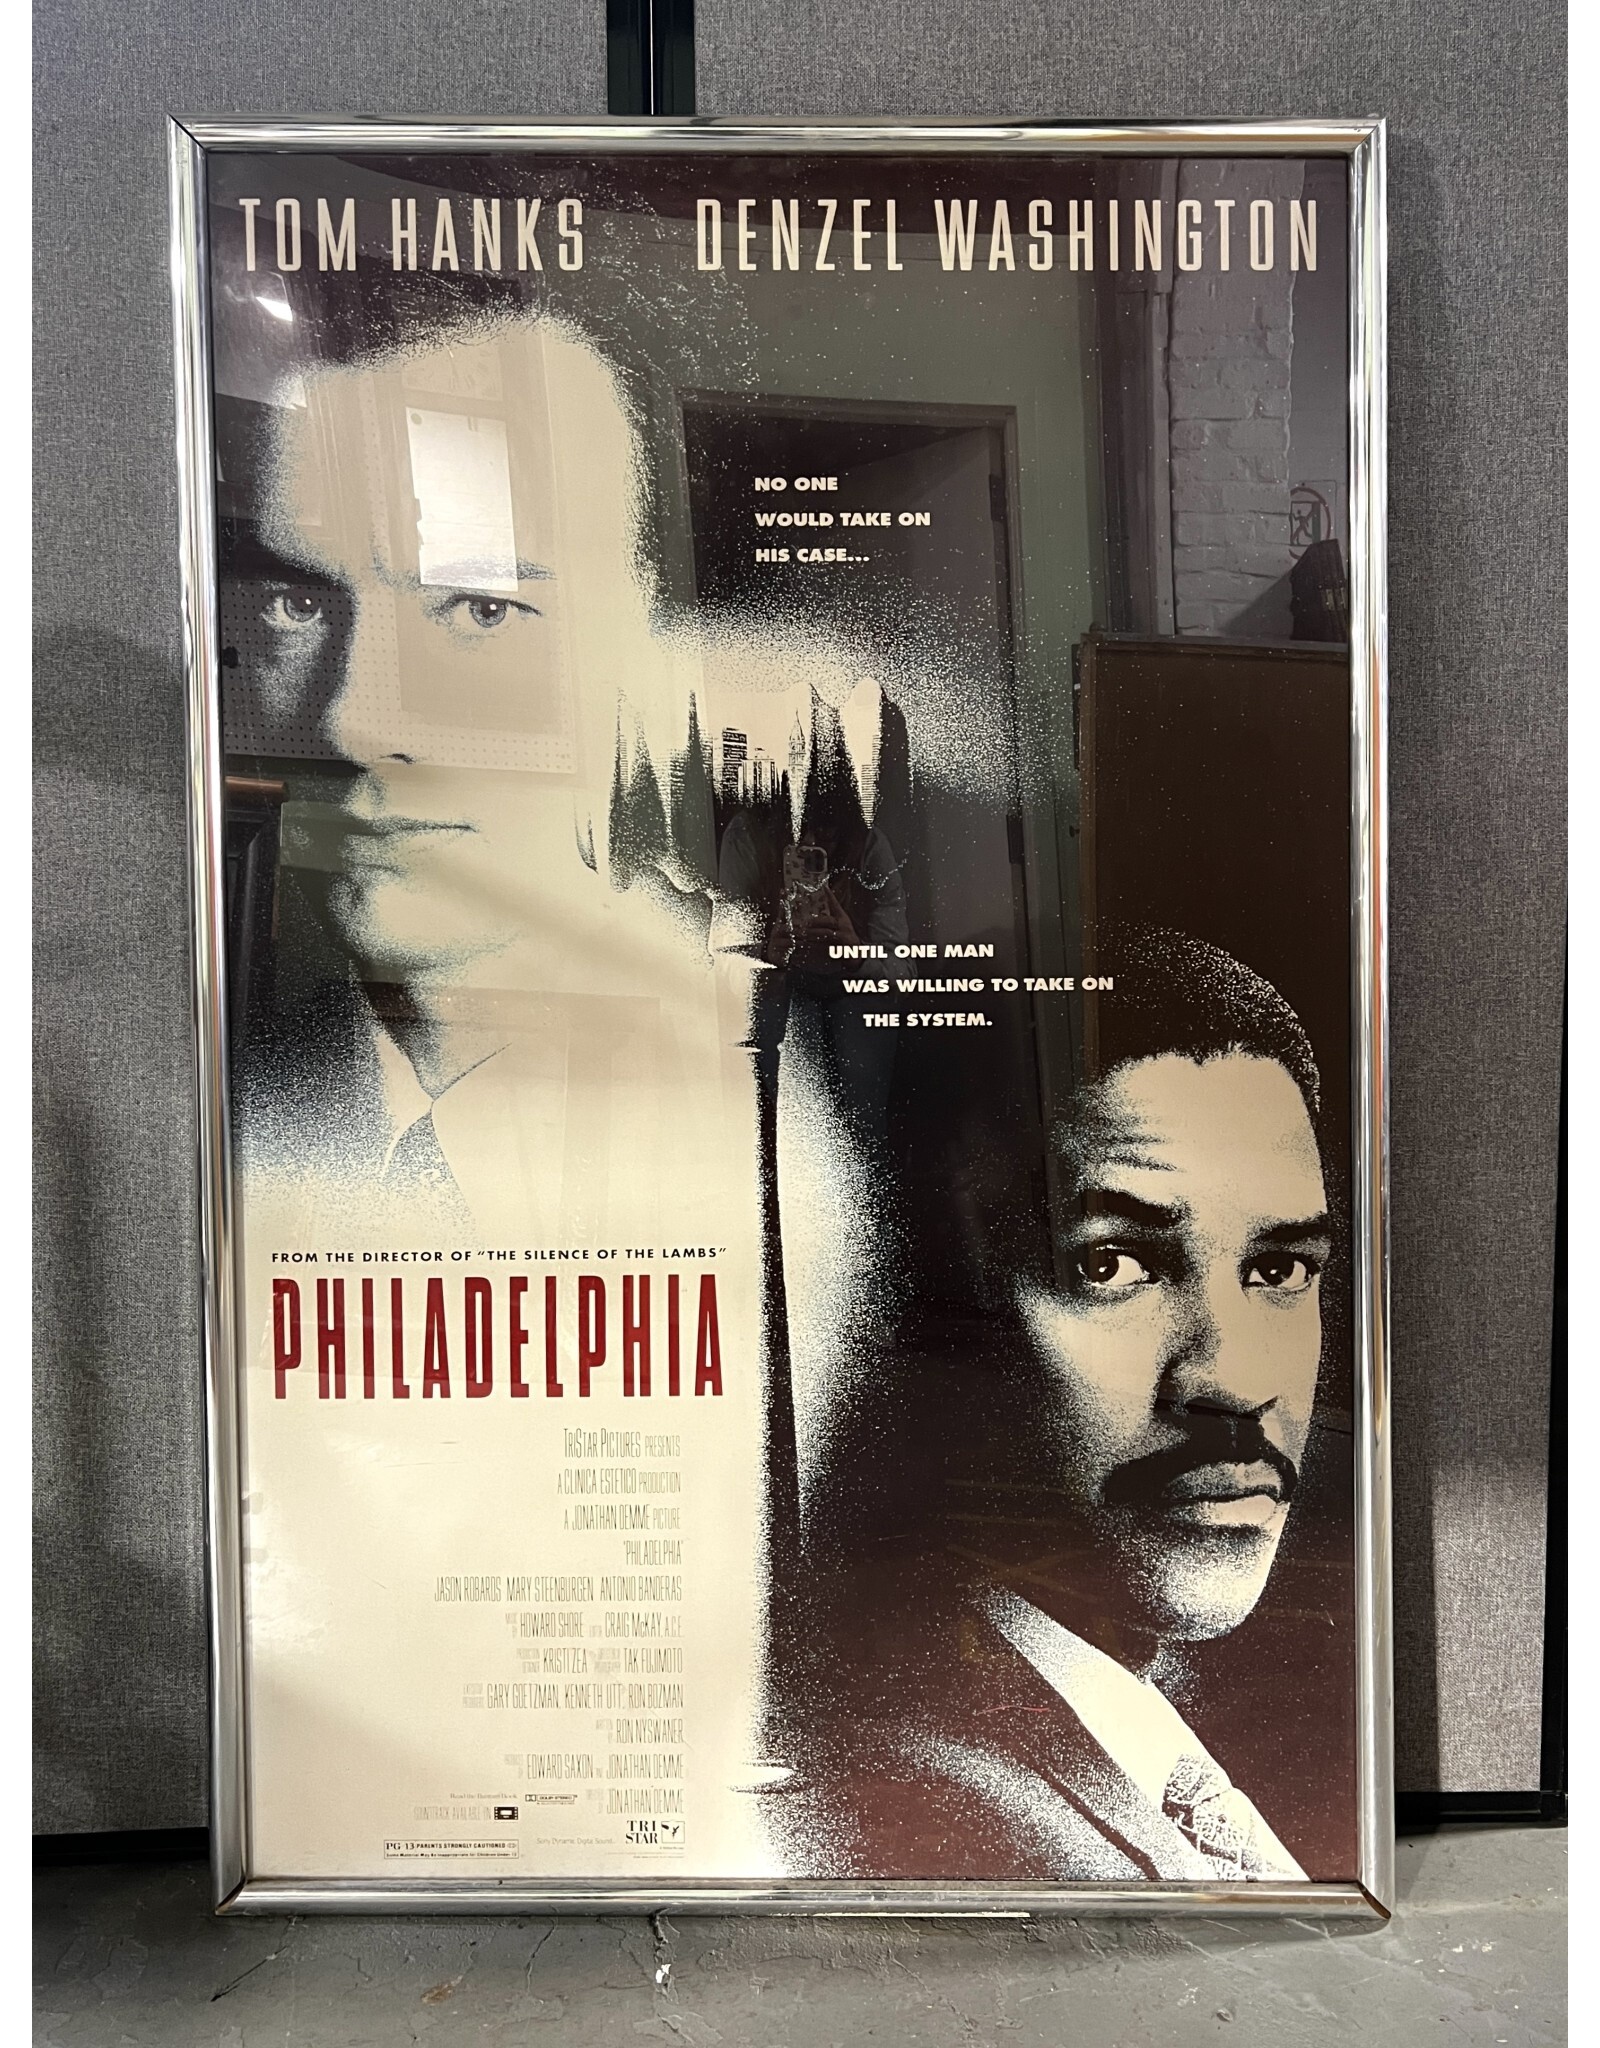 Philadelphia, framed movie poster